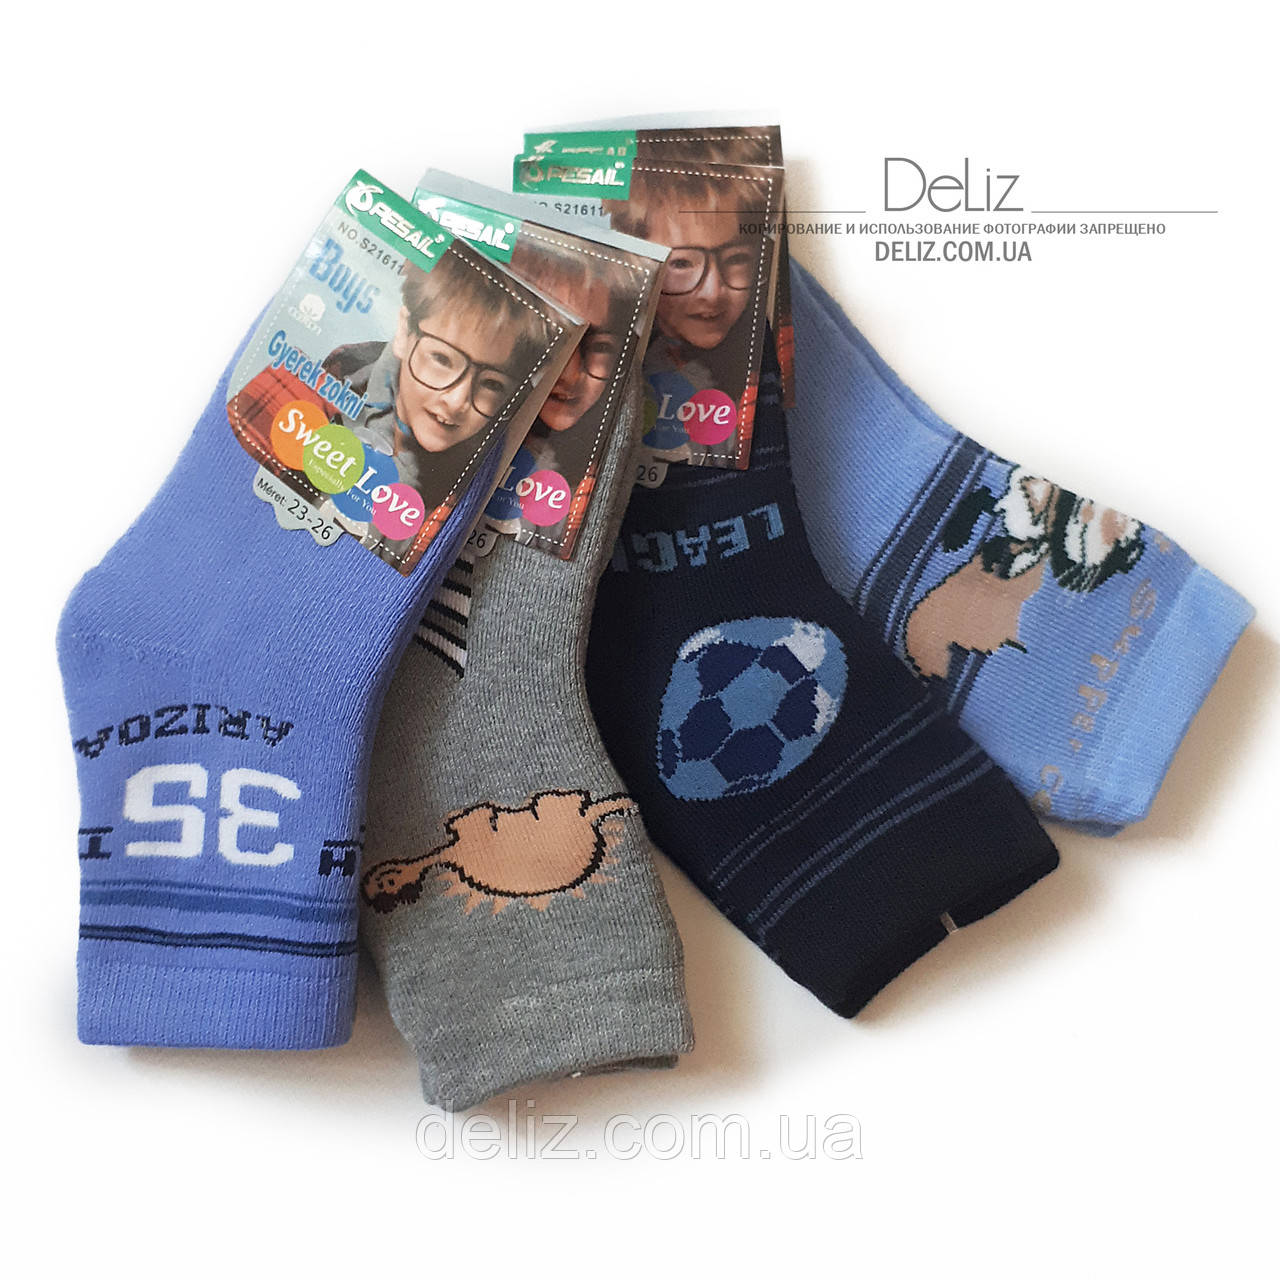 Теплі х/б шкарпетки для хлопчиків Pesail 6030 (всередині махрові). Розмір 23-26. Сірий колір